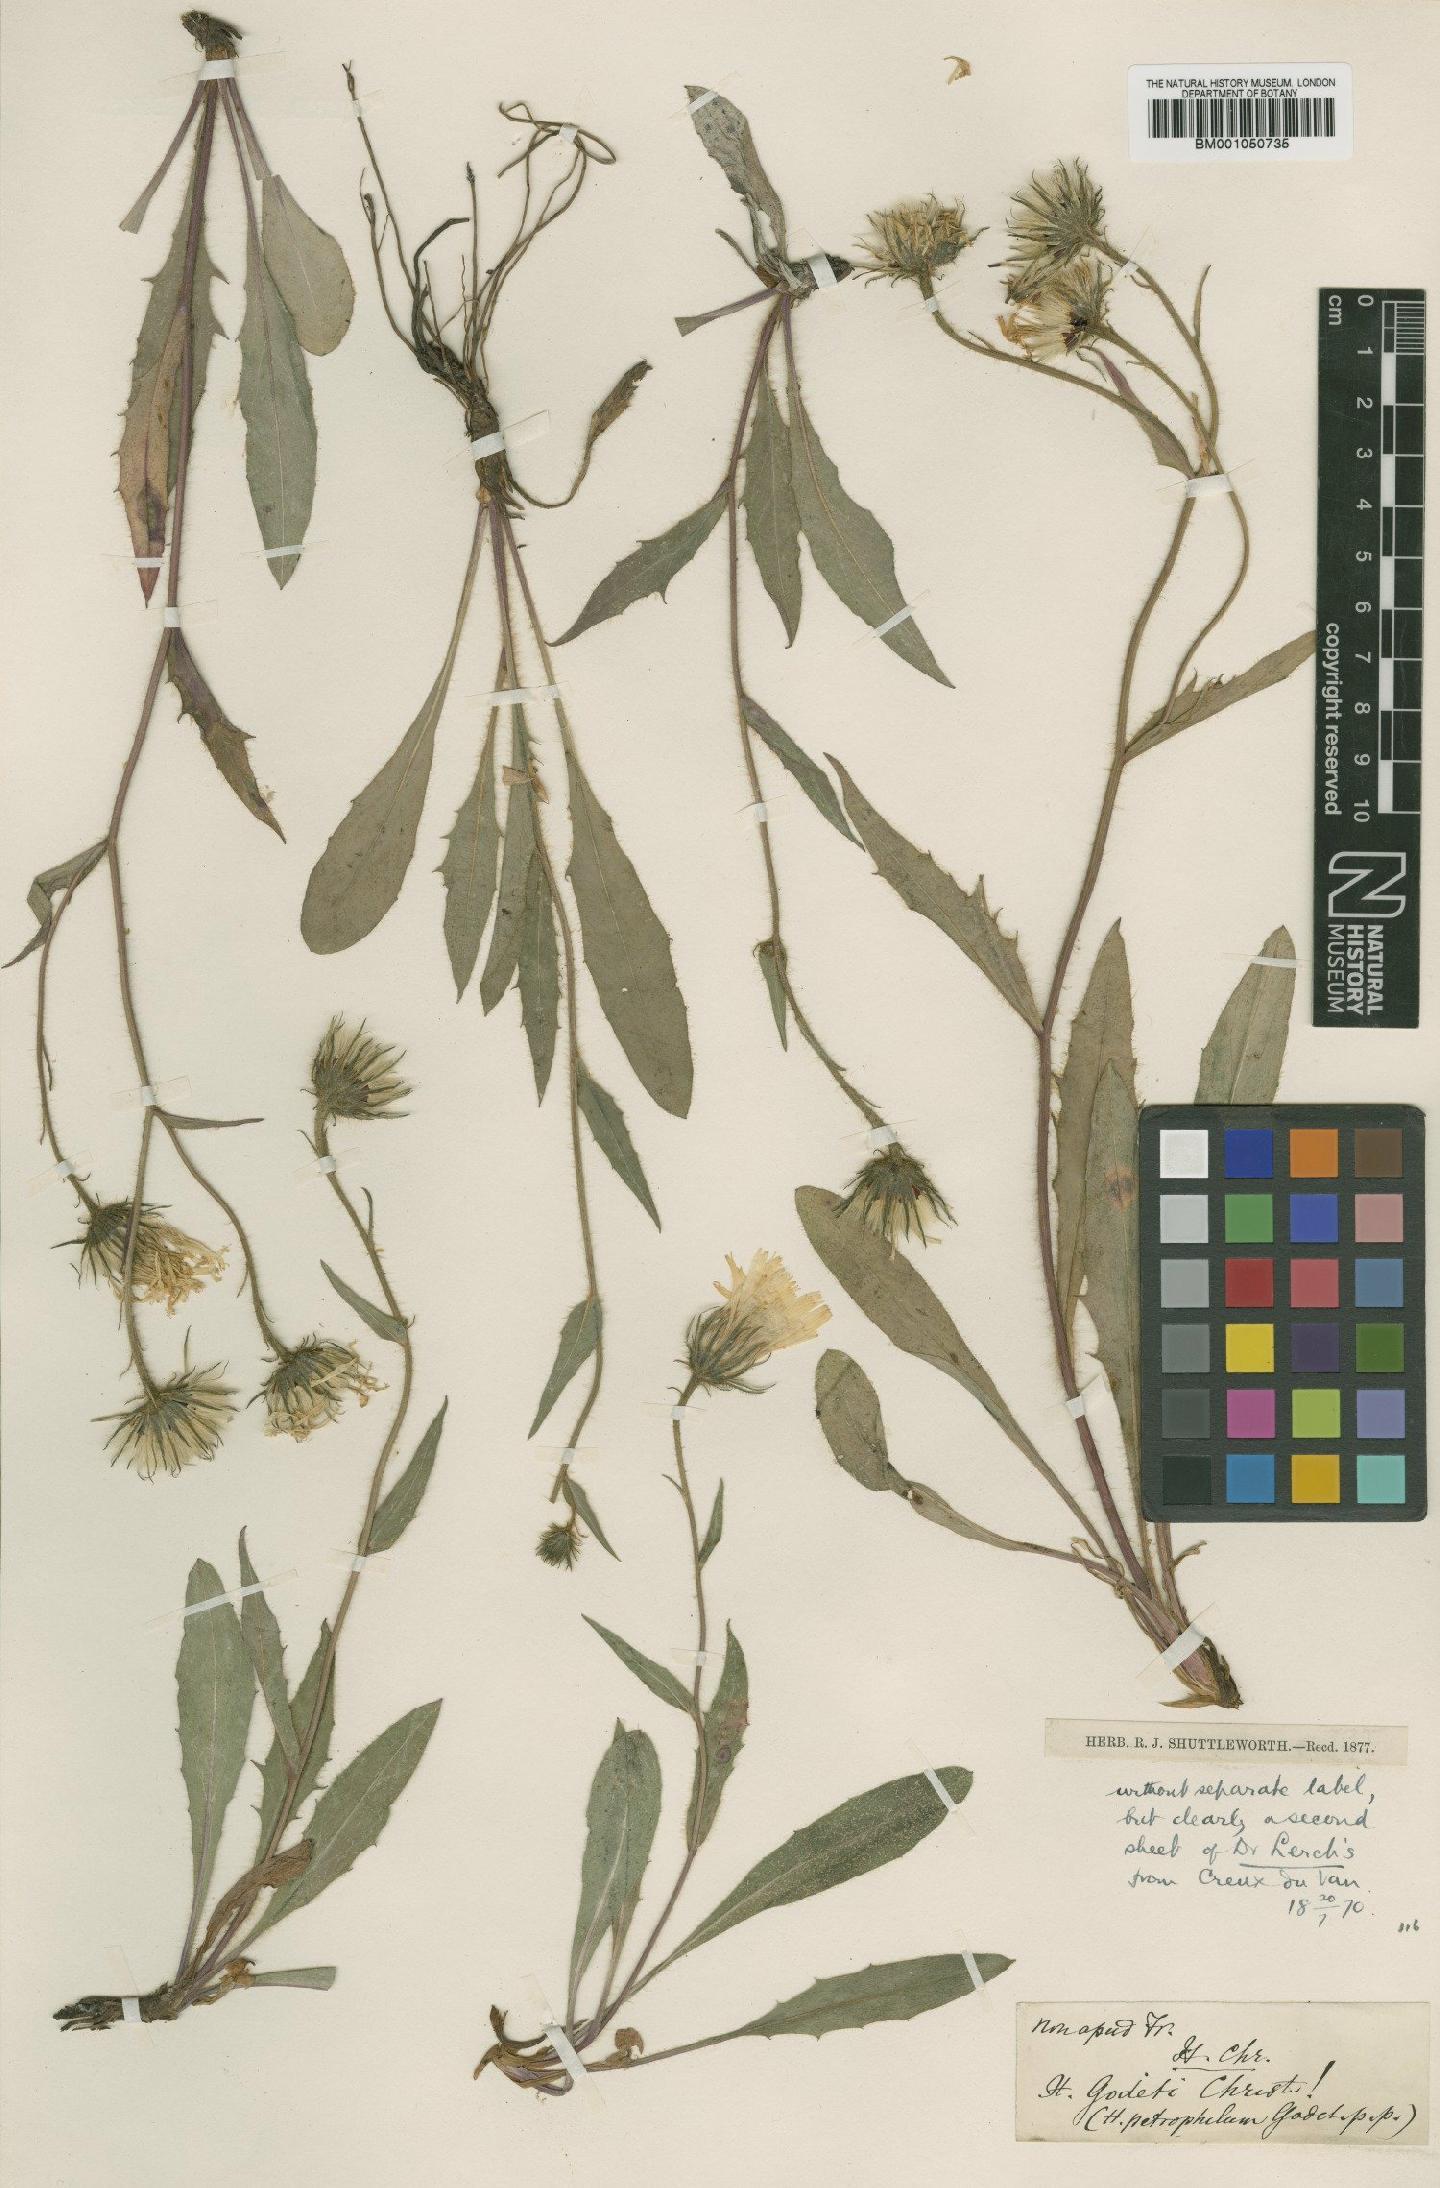 To NHMUK collection (Hieracium leucophaeum subsp. petrophilum (Godet) Zahn; TYPE; NHMUK:ecatalogue:2398458)